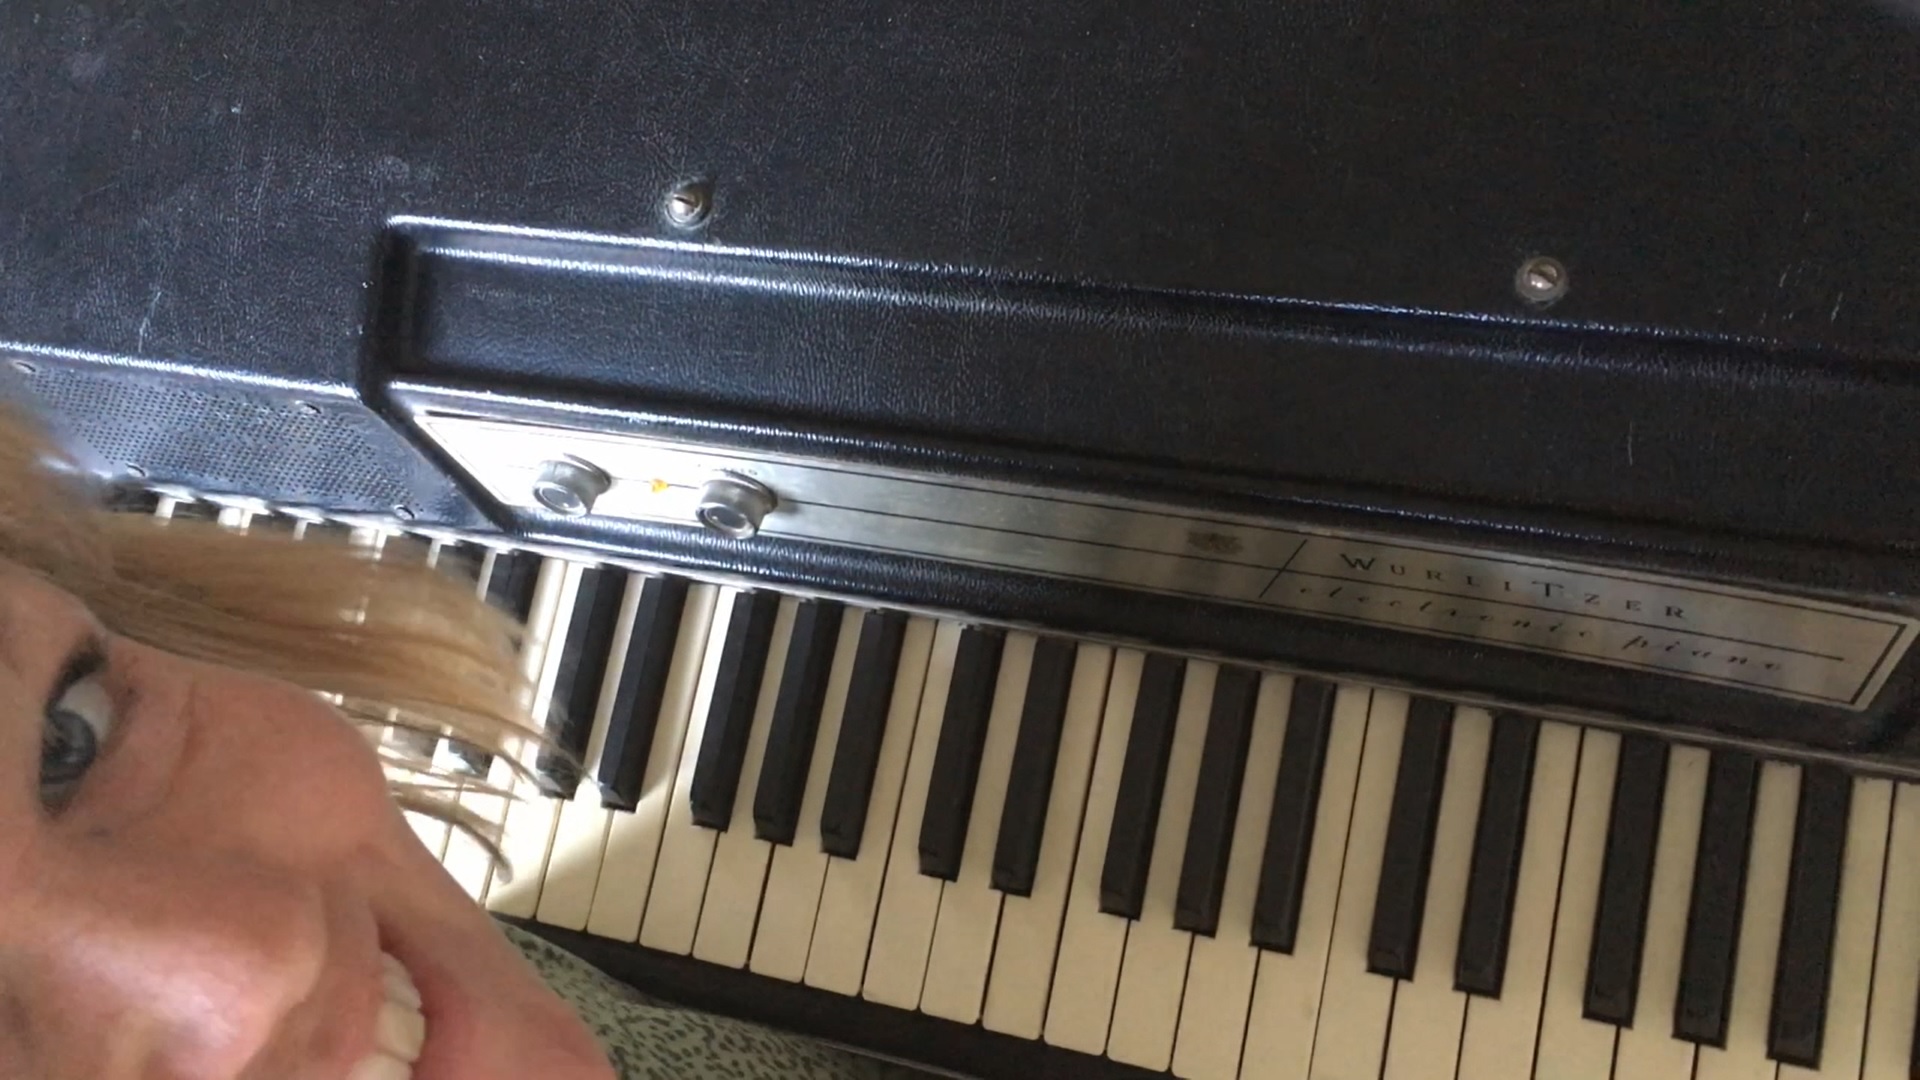 Dur-og molakkorder og sådan er et klaver bygget op - Spil Smarts hjemmemusiktime